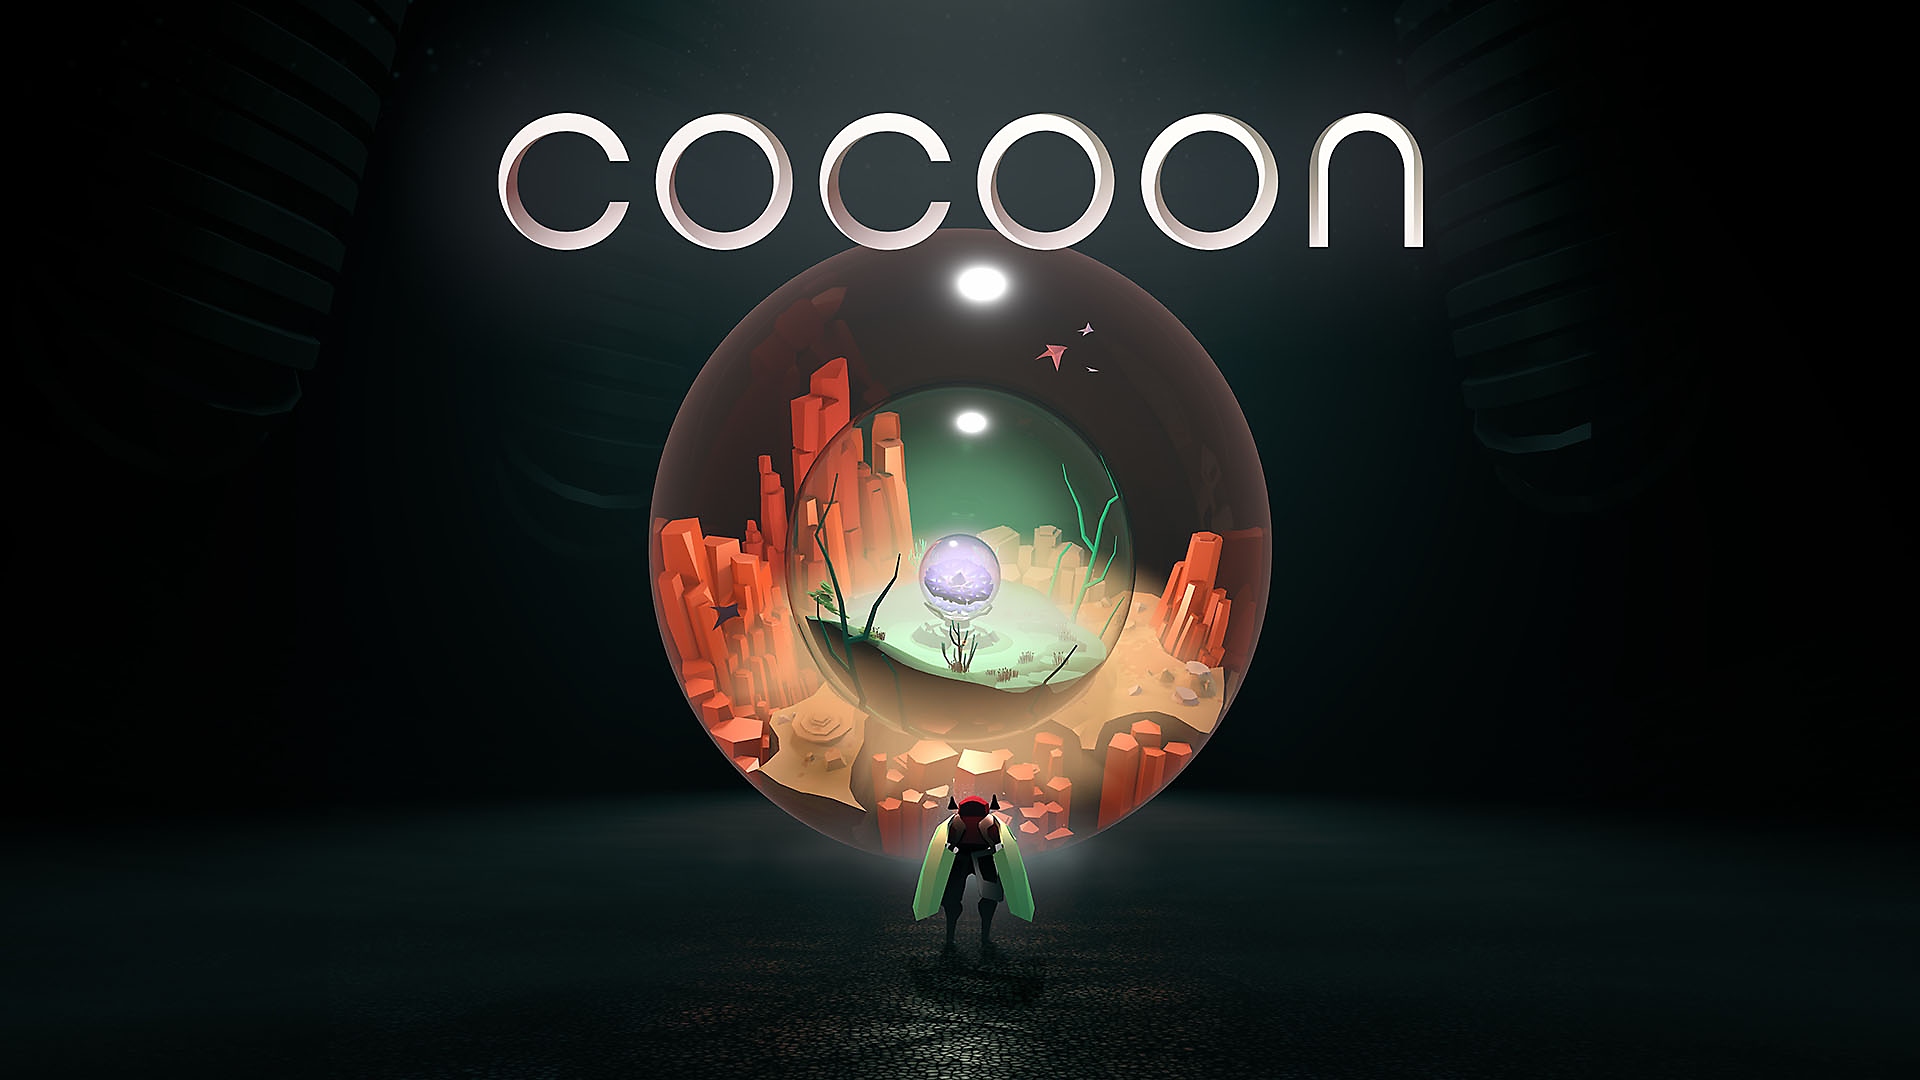 عرض الإطلاق التشويقي للعبة Cocoon